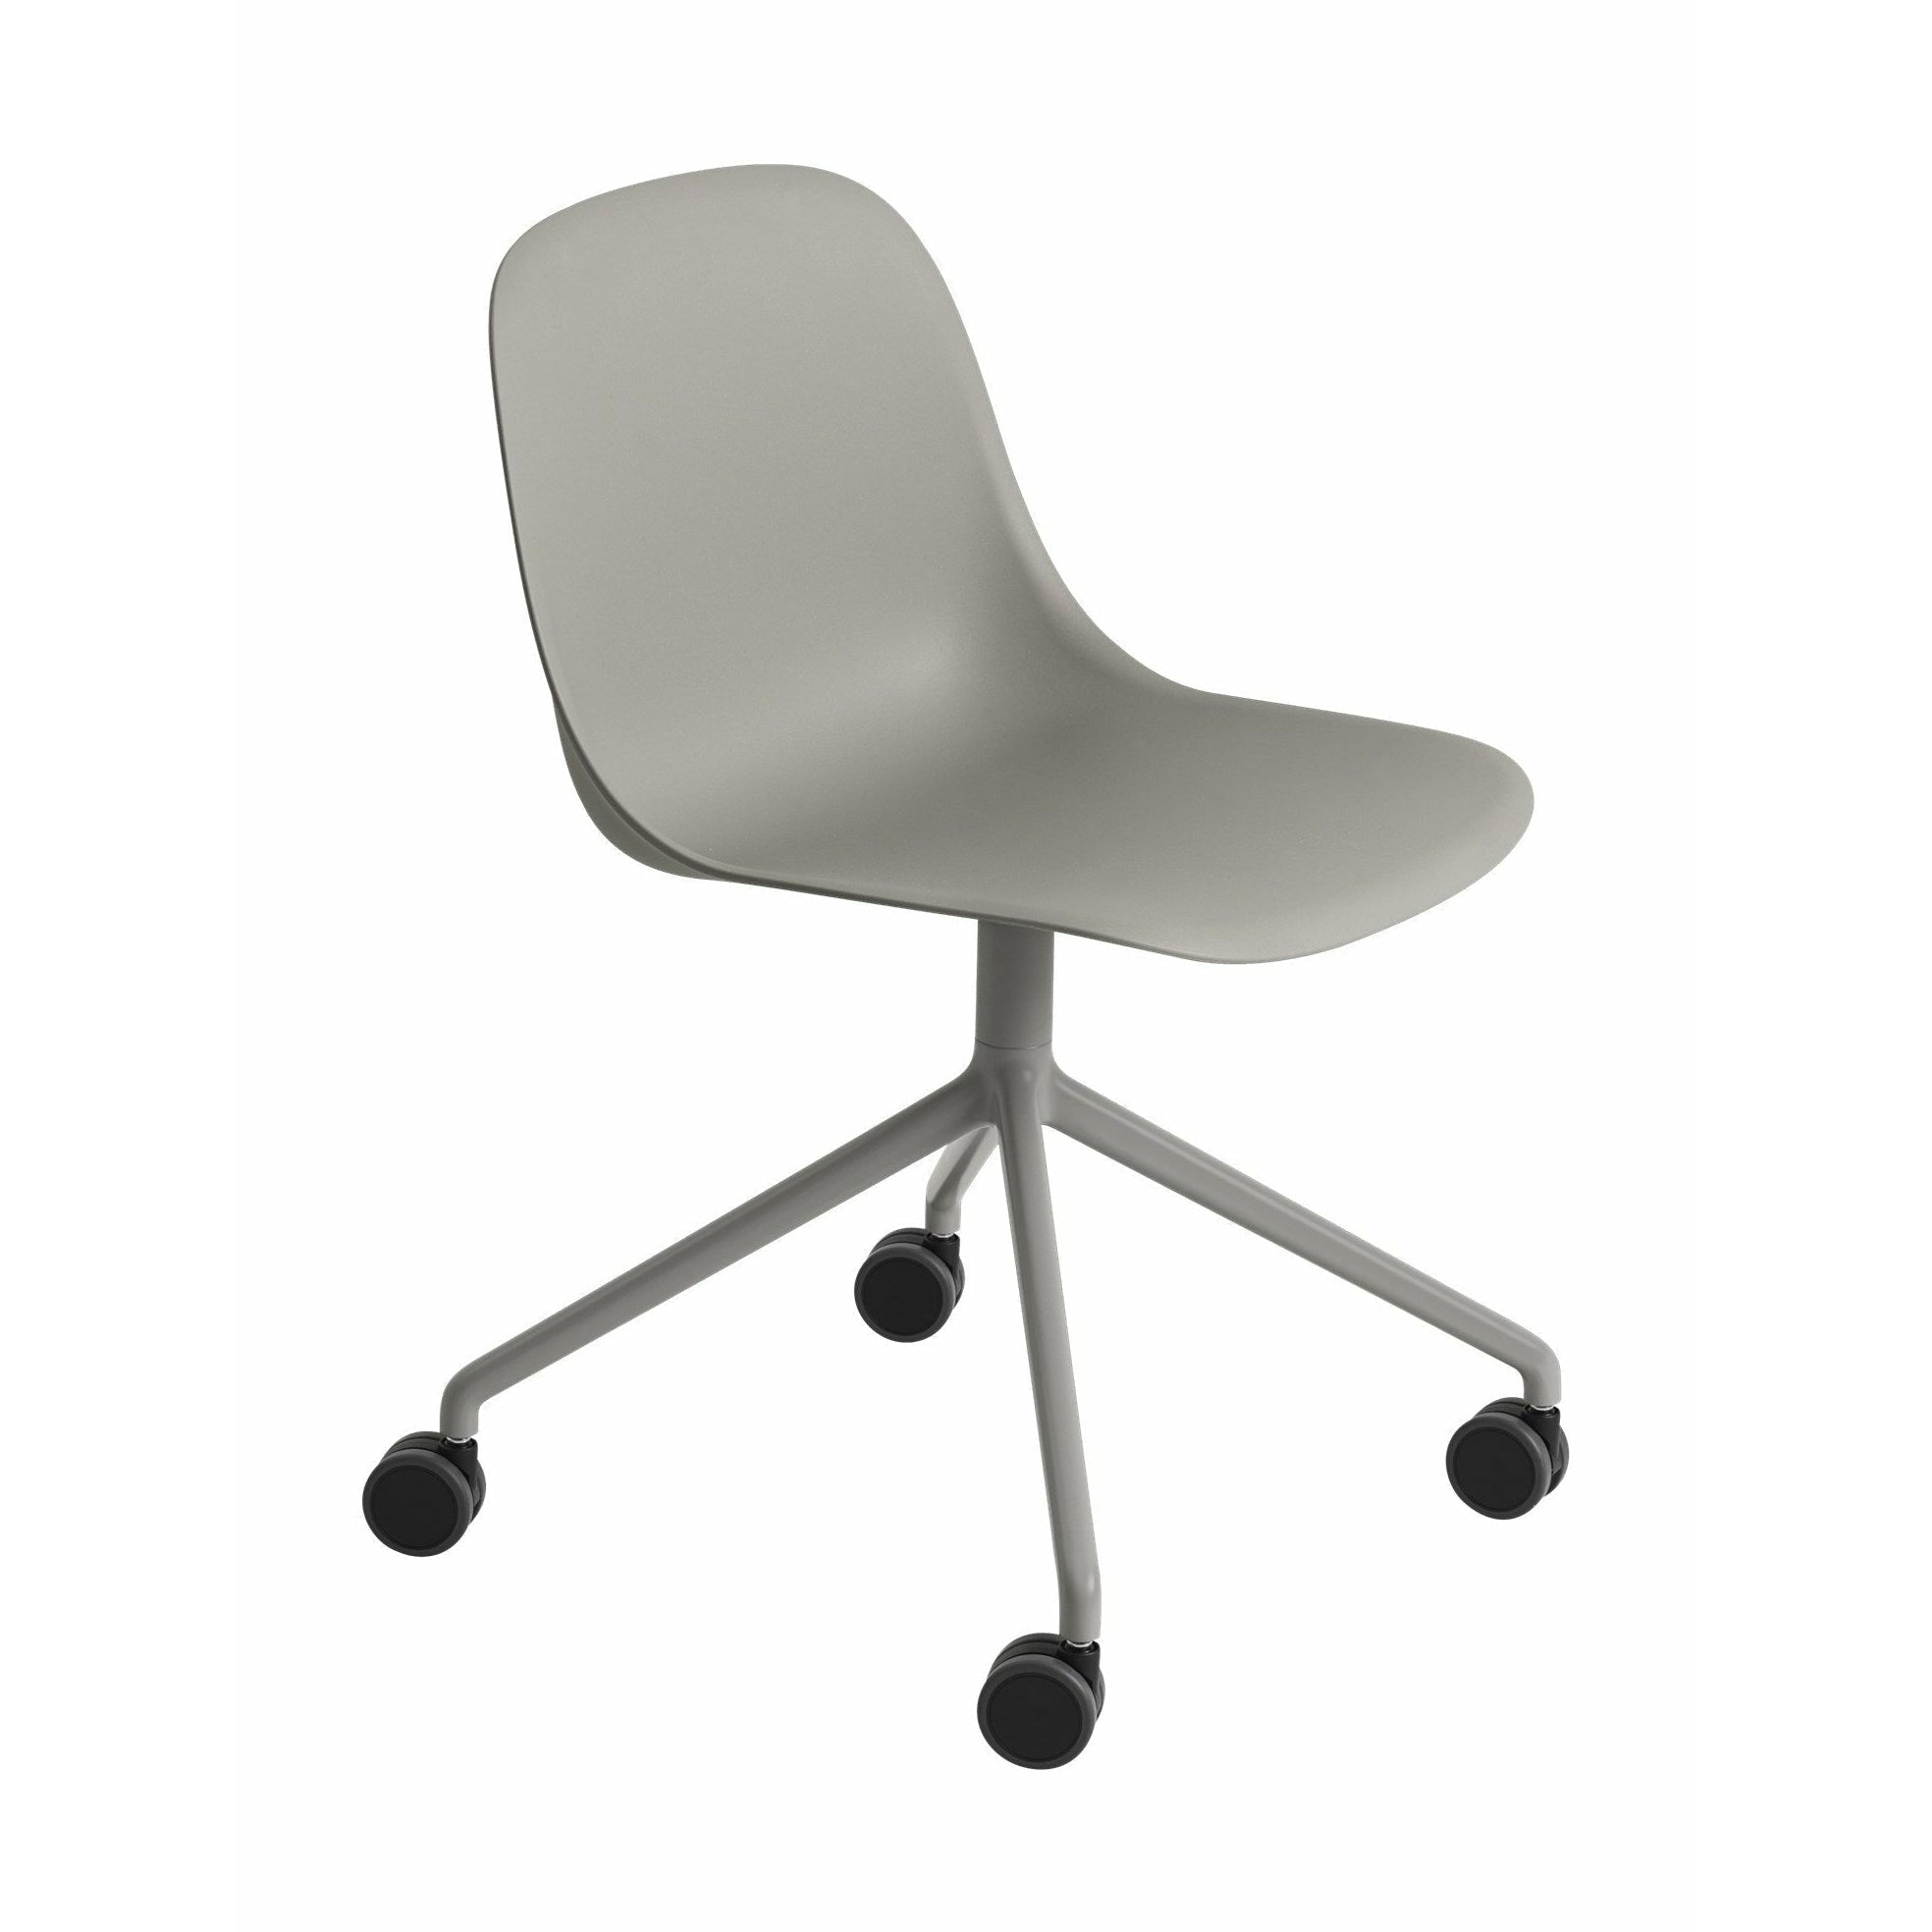 由带轮，灰色/灰色的可回收塑料旋转制成的Muuto纤维侧椅